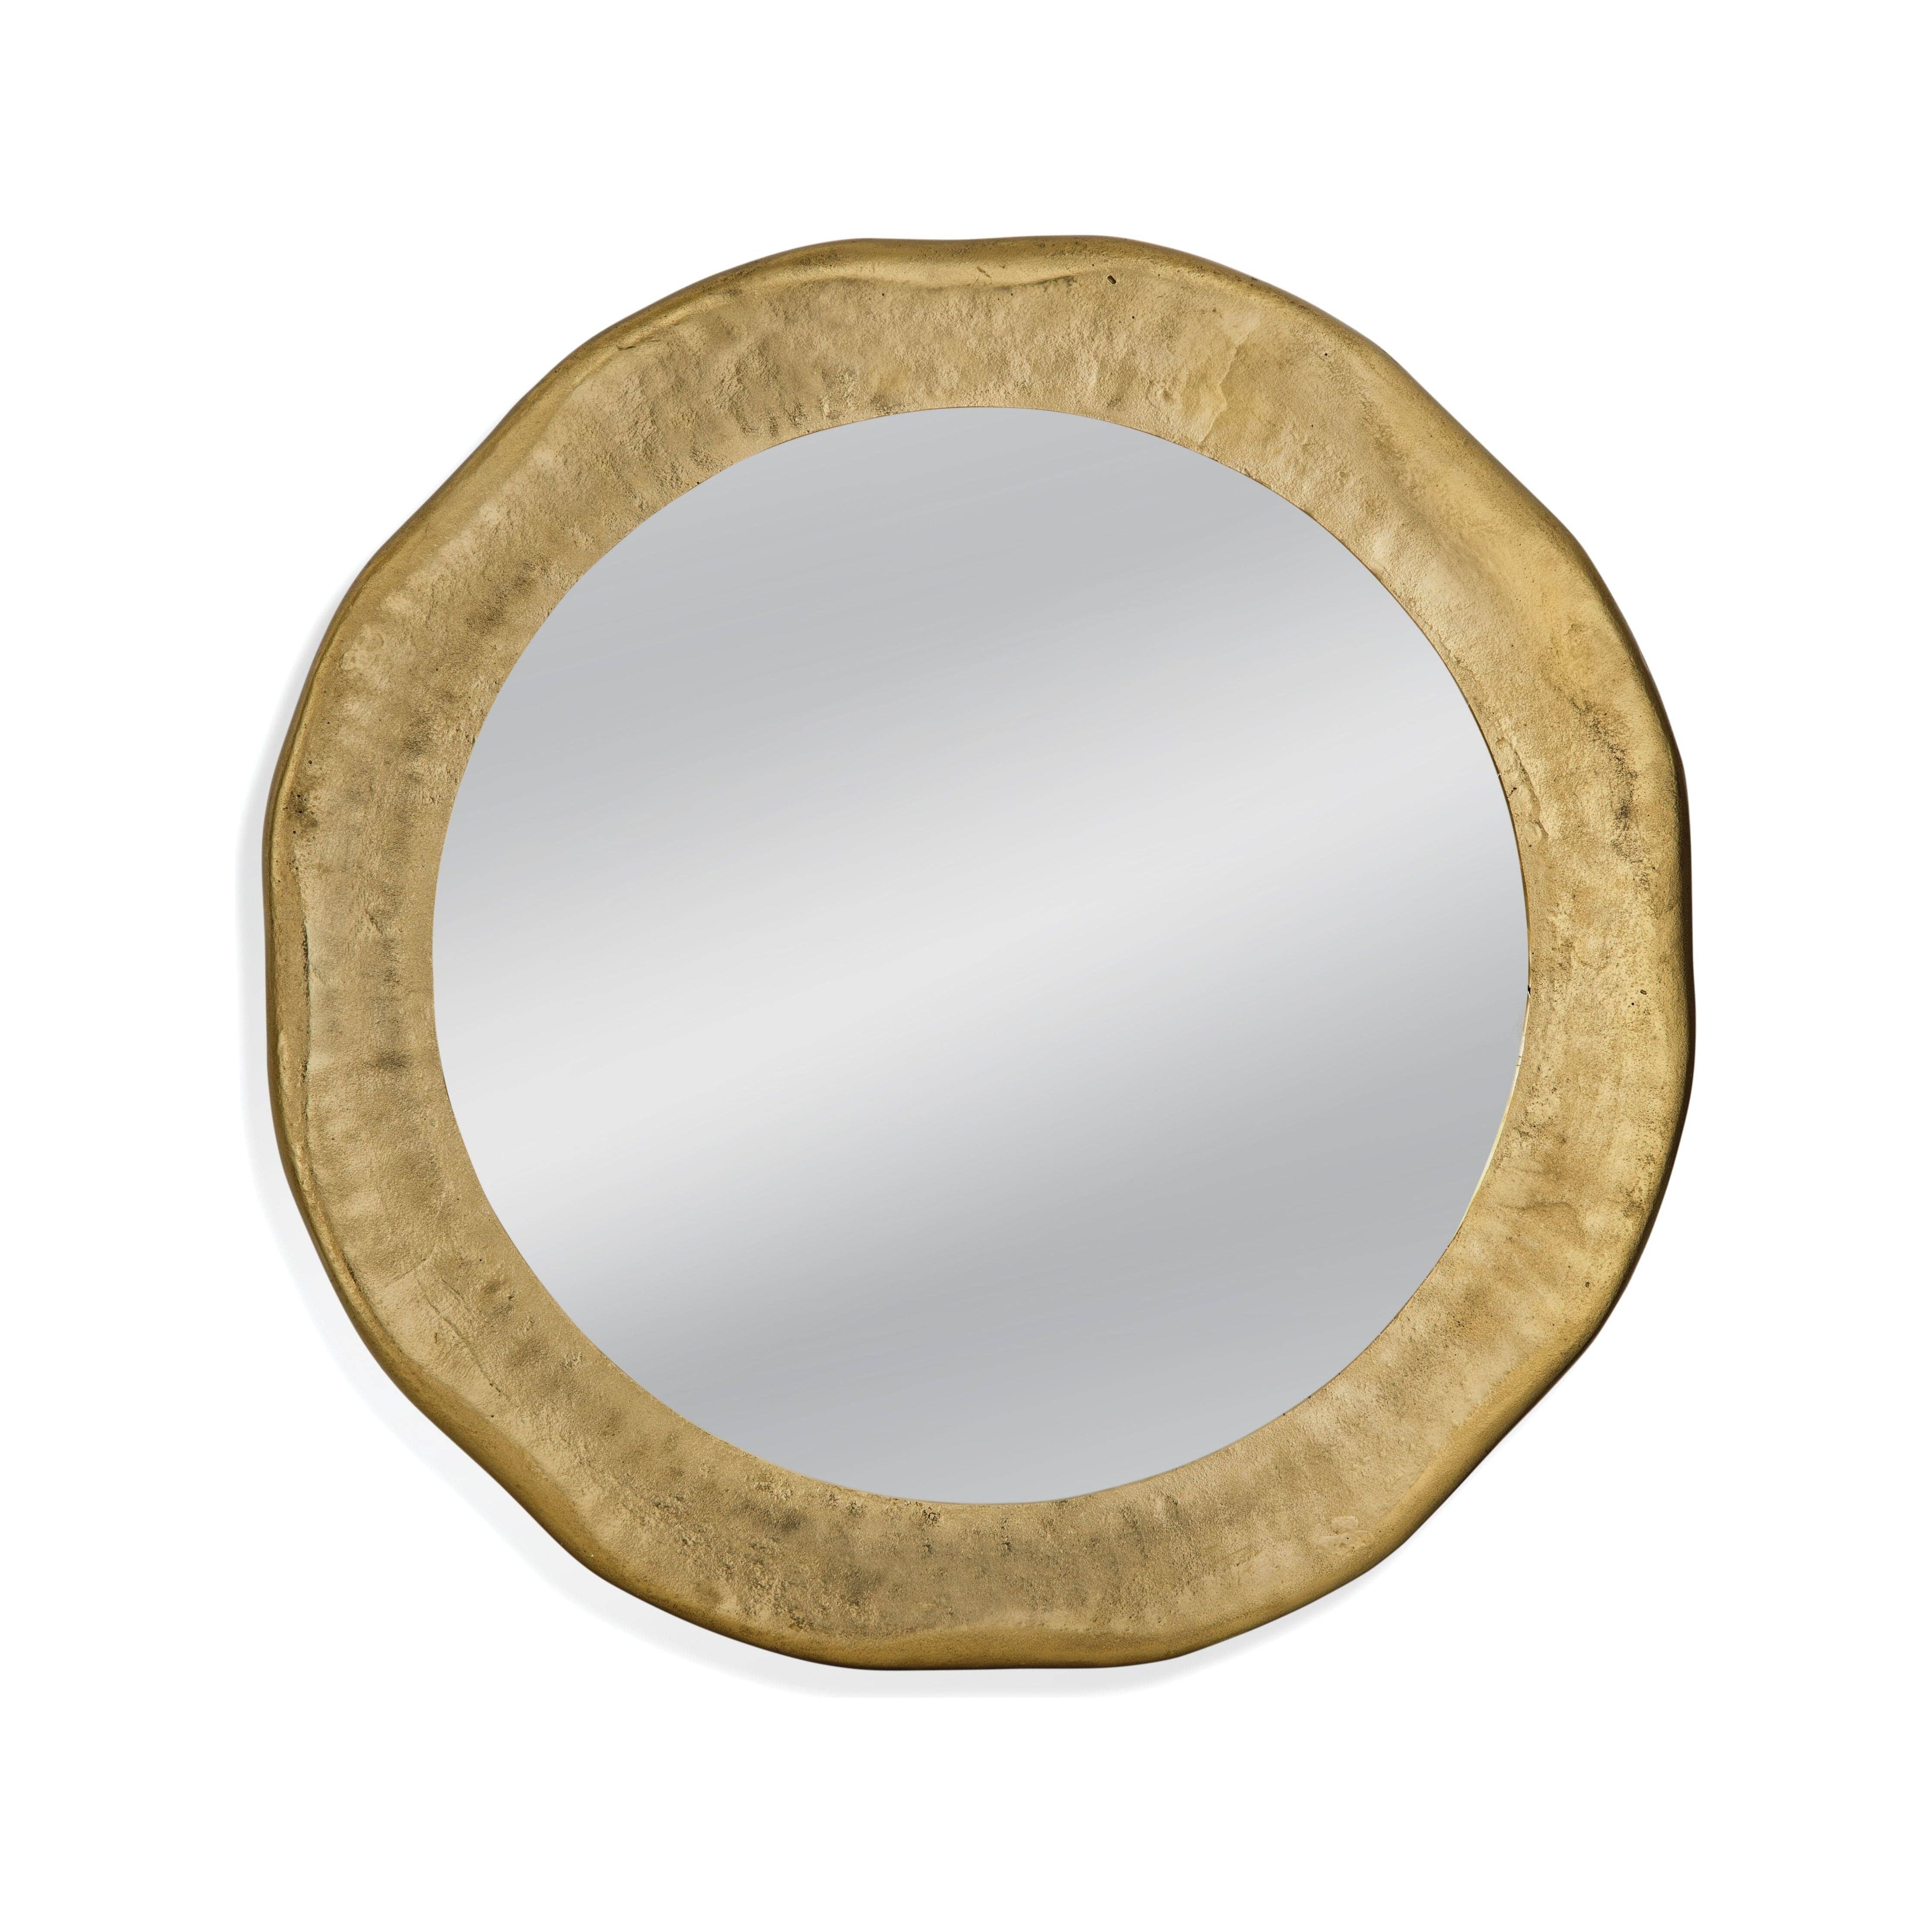 Bassett Mirror - Shane Round Wall Mirror 36W x 36H - M4524EC Wall Mirror, Decorative Mirror, Round Mirror Bassett Mirror 